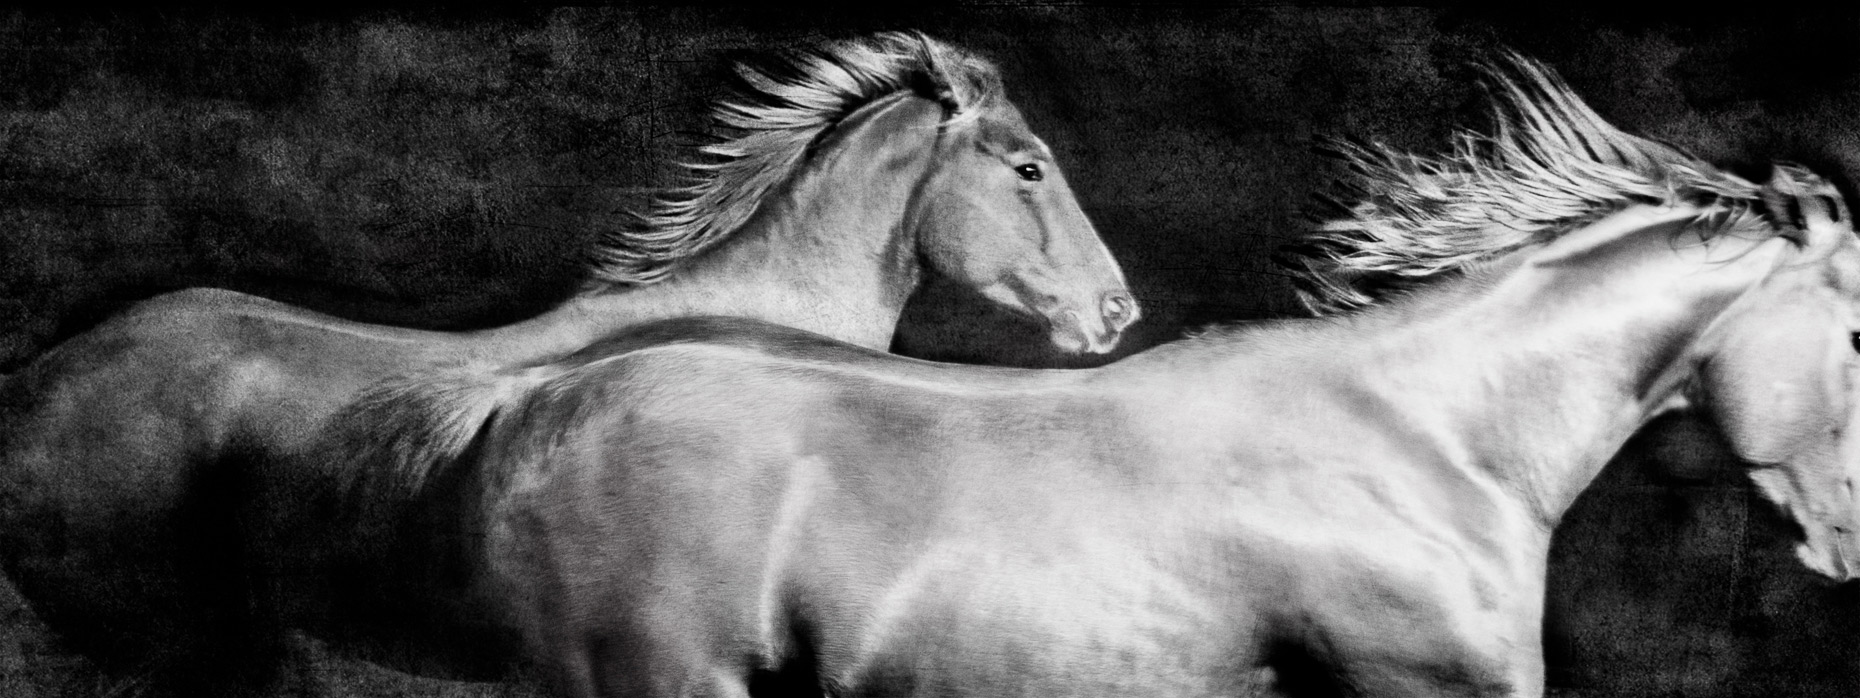 La-Cense-Horses-6530-Edit-2-_PORTFOLIO.jpg